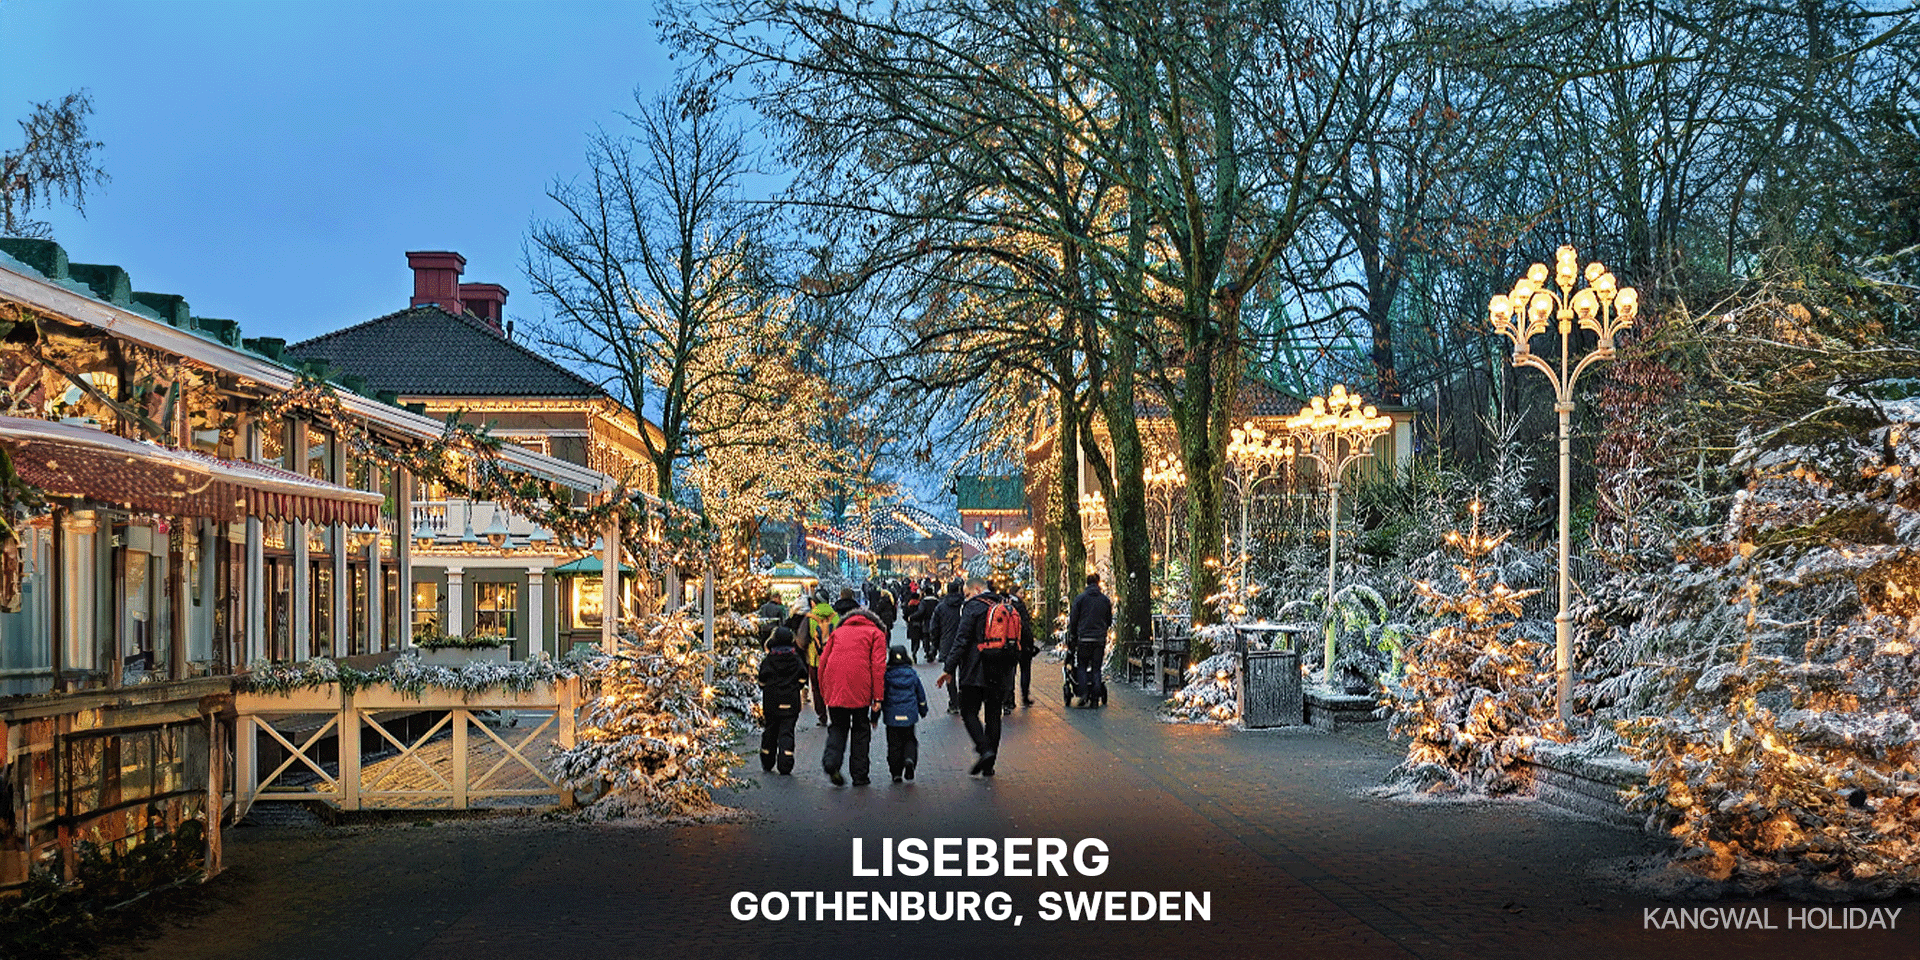 Liseberg: Gothenburg, Sweden